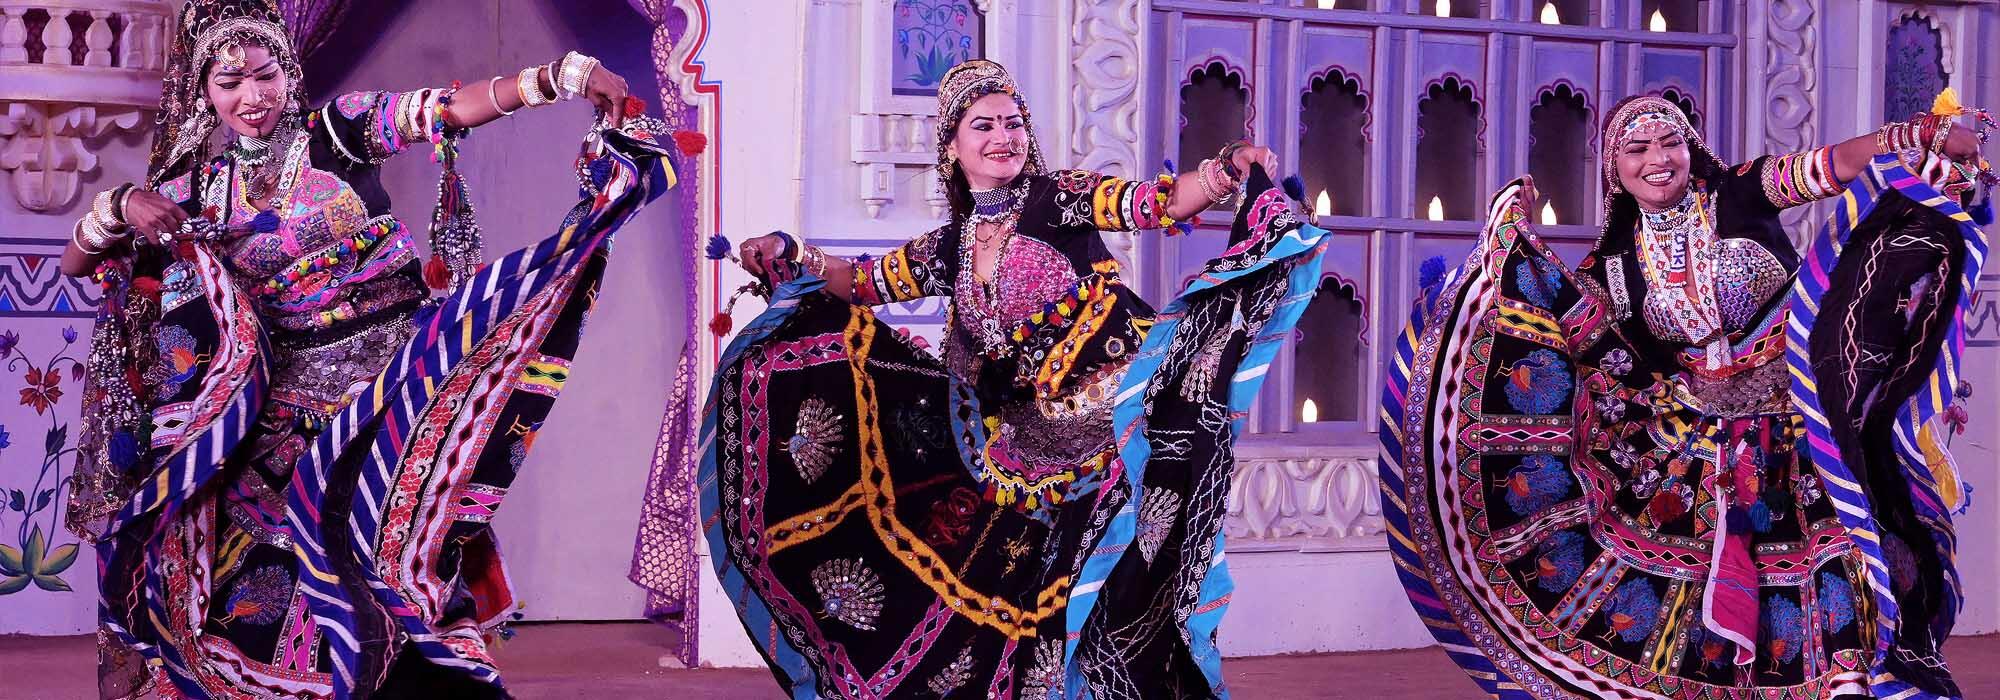 कालबेलिया, राजस्थान का पारंपरिक लोक नृत्य